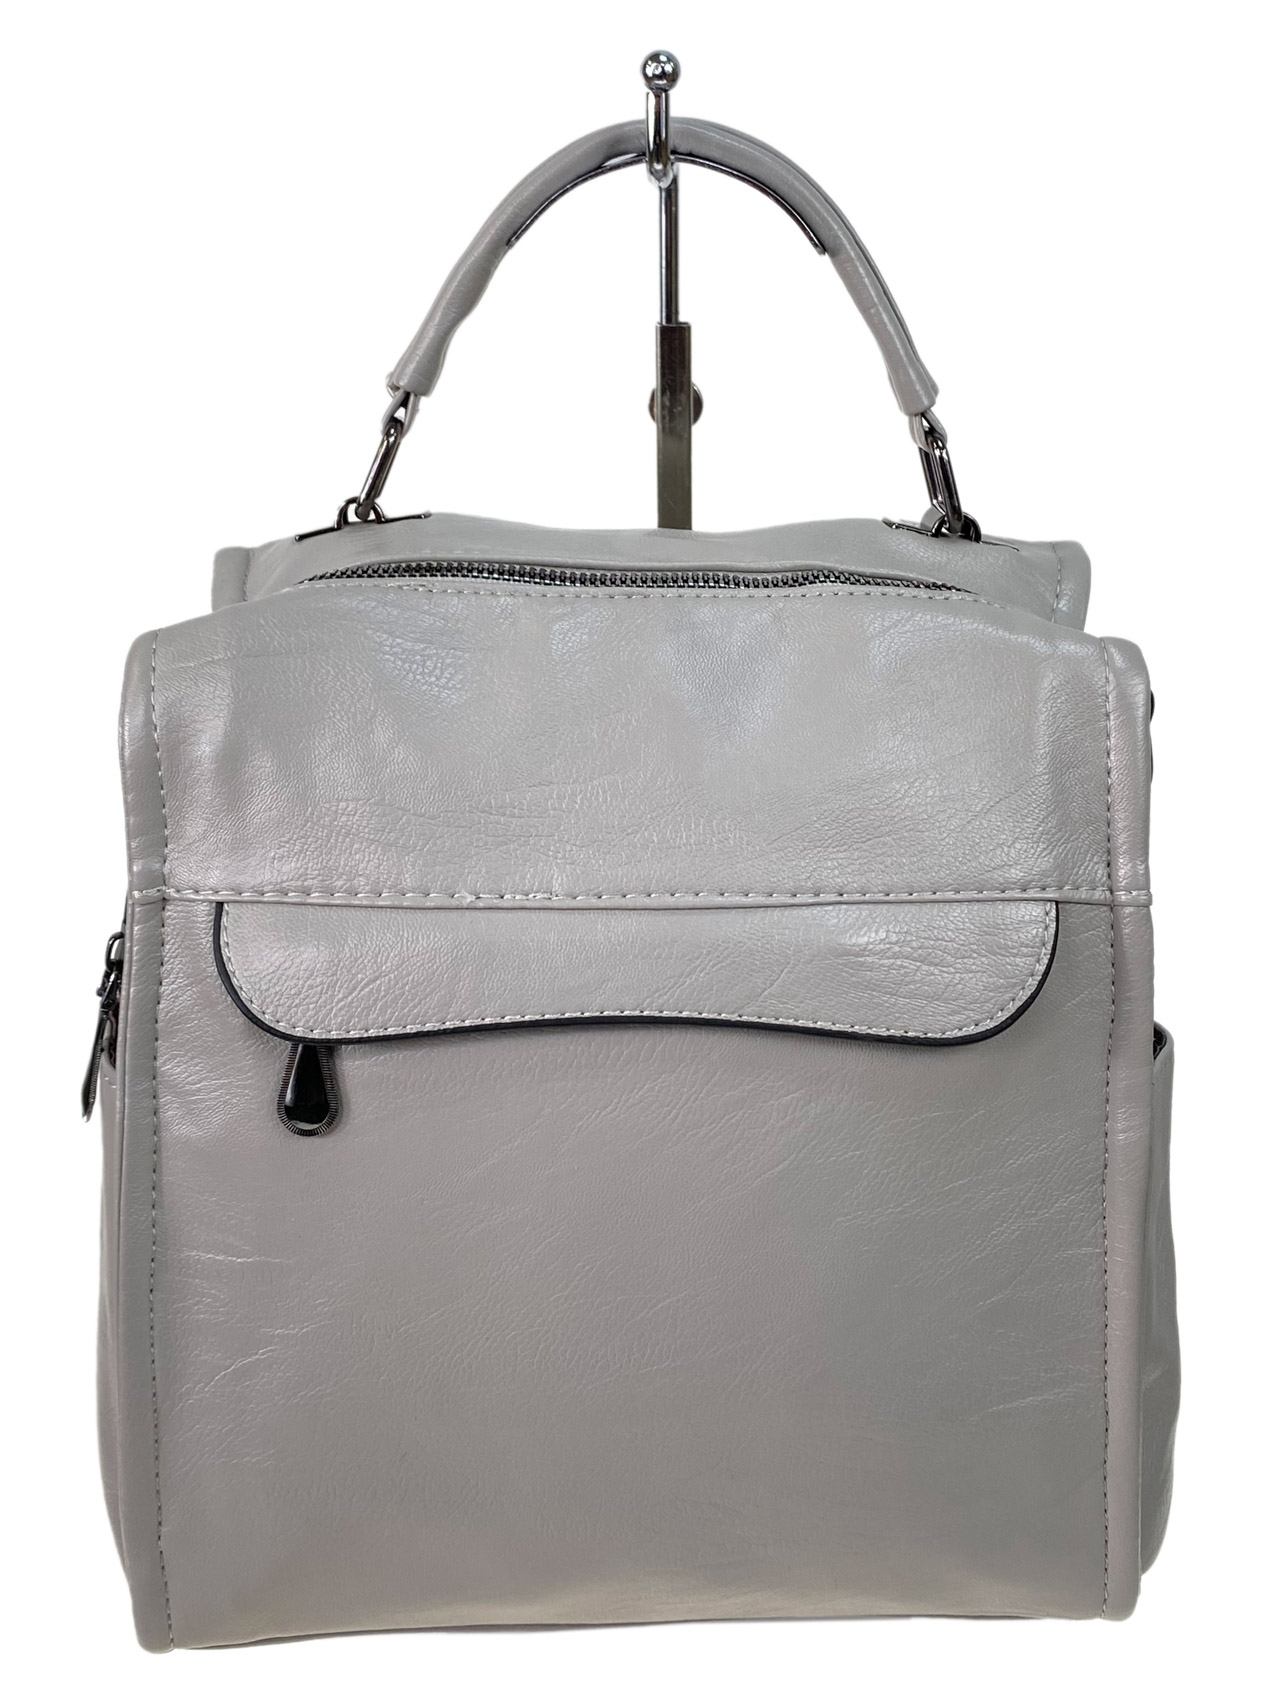 Женская сумка -рюкзак из искусственной кожи, цвет серый